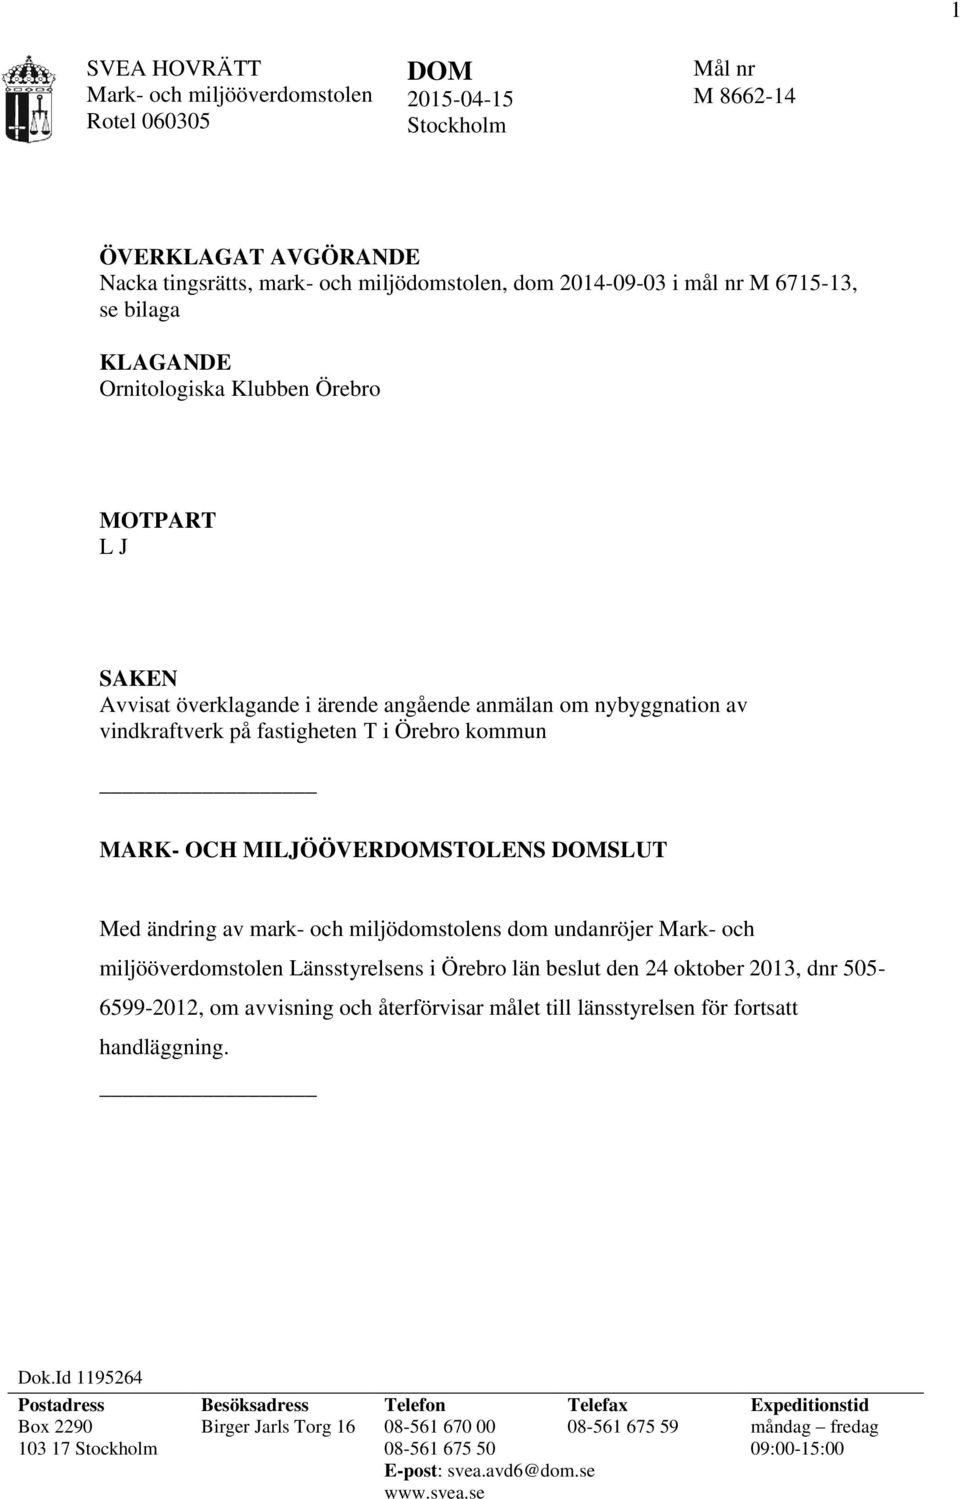 Med ändring av mark- och miljödomstolens dom undanröjer Mark- och miljööverdomstolen Länsstyrelsens i Örebro län beslut den 24 oktober 2013, dnr 505-6599-2012, om avvisning och återförvisar målet